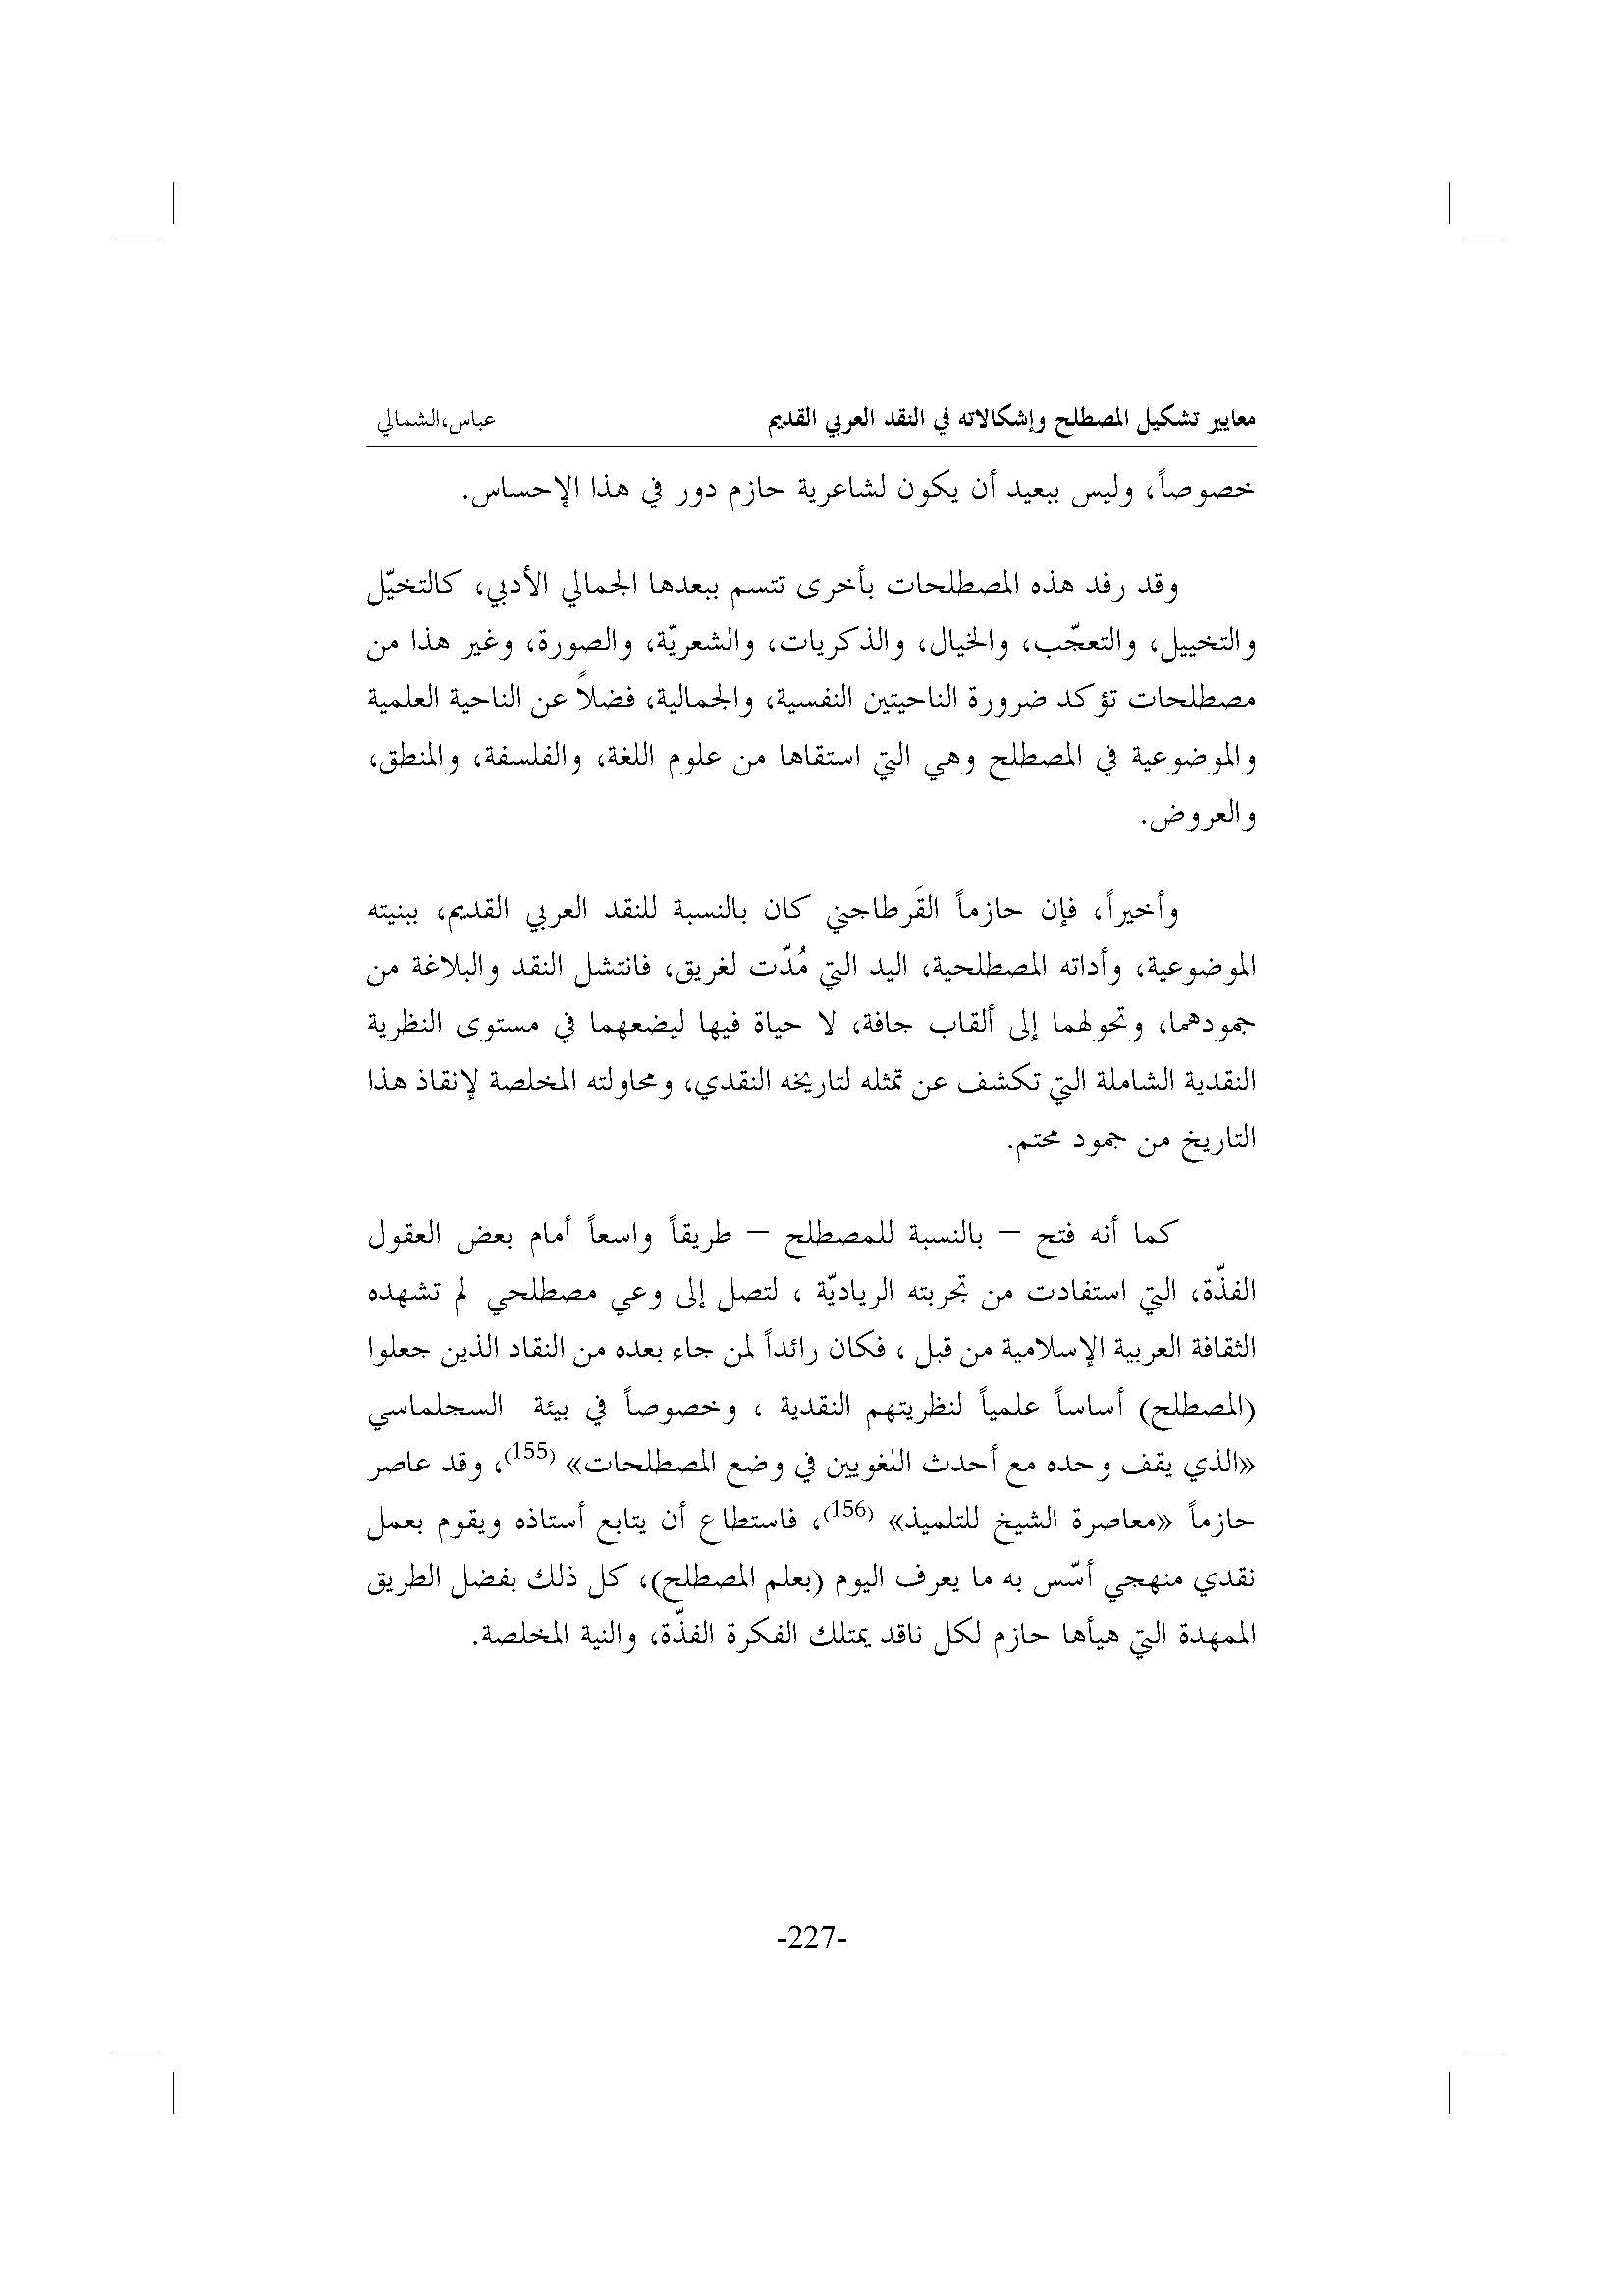 الأرشيف البصائر العدد 2 تاريخ الإصدار 1 مارس 2010 مقالة معايير تشكيل المصطلح وإشكالاته في النقد العربي القديم